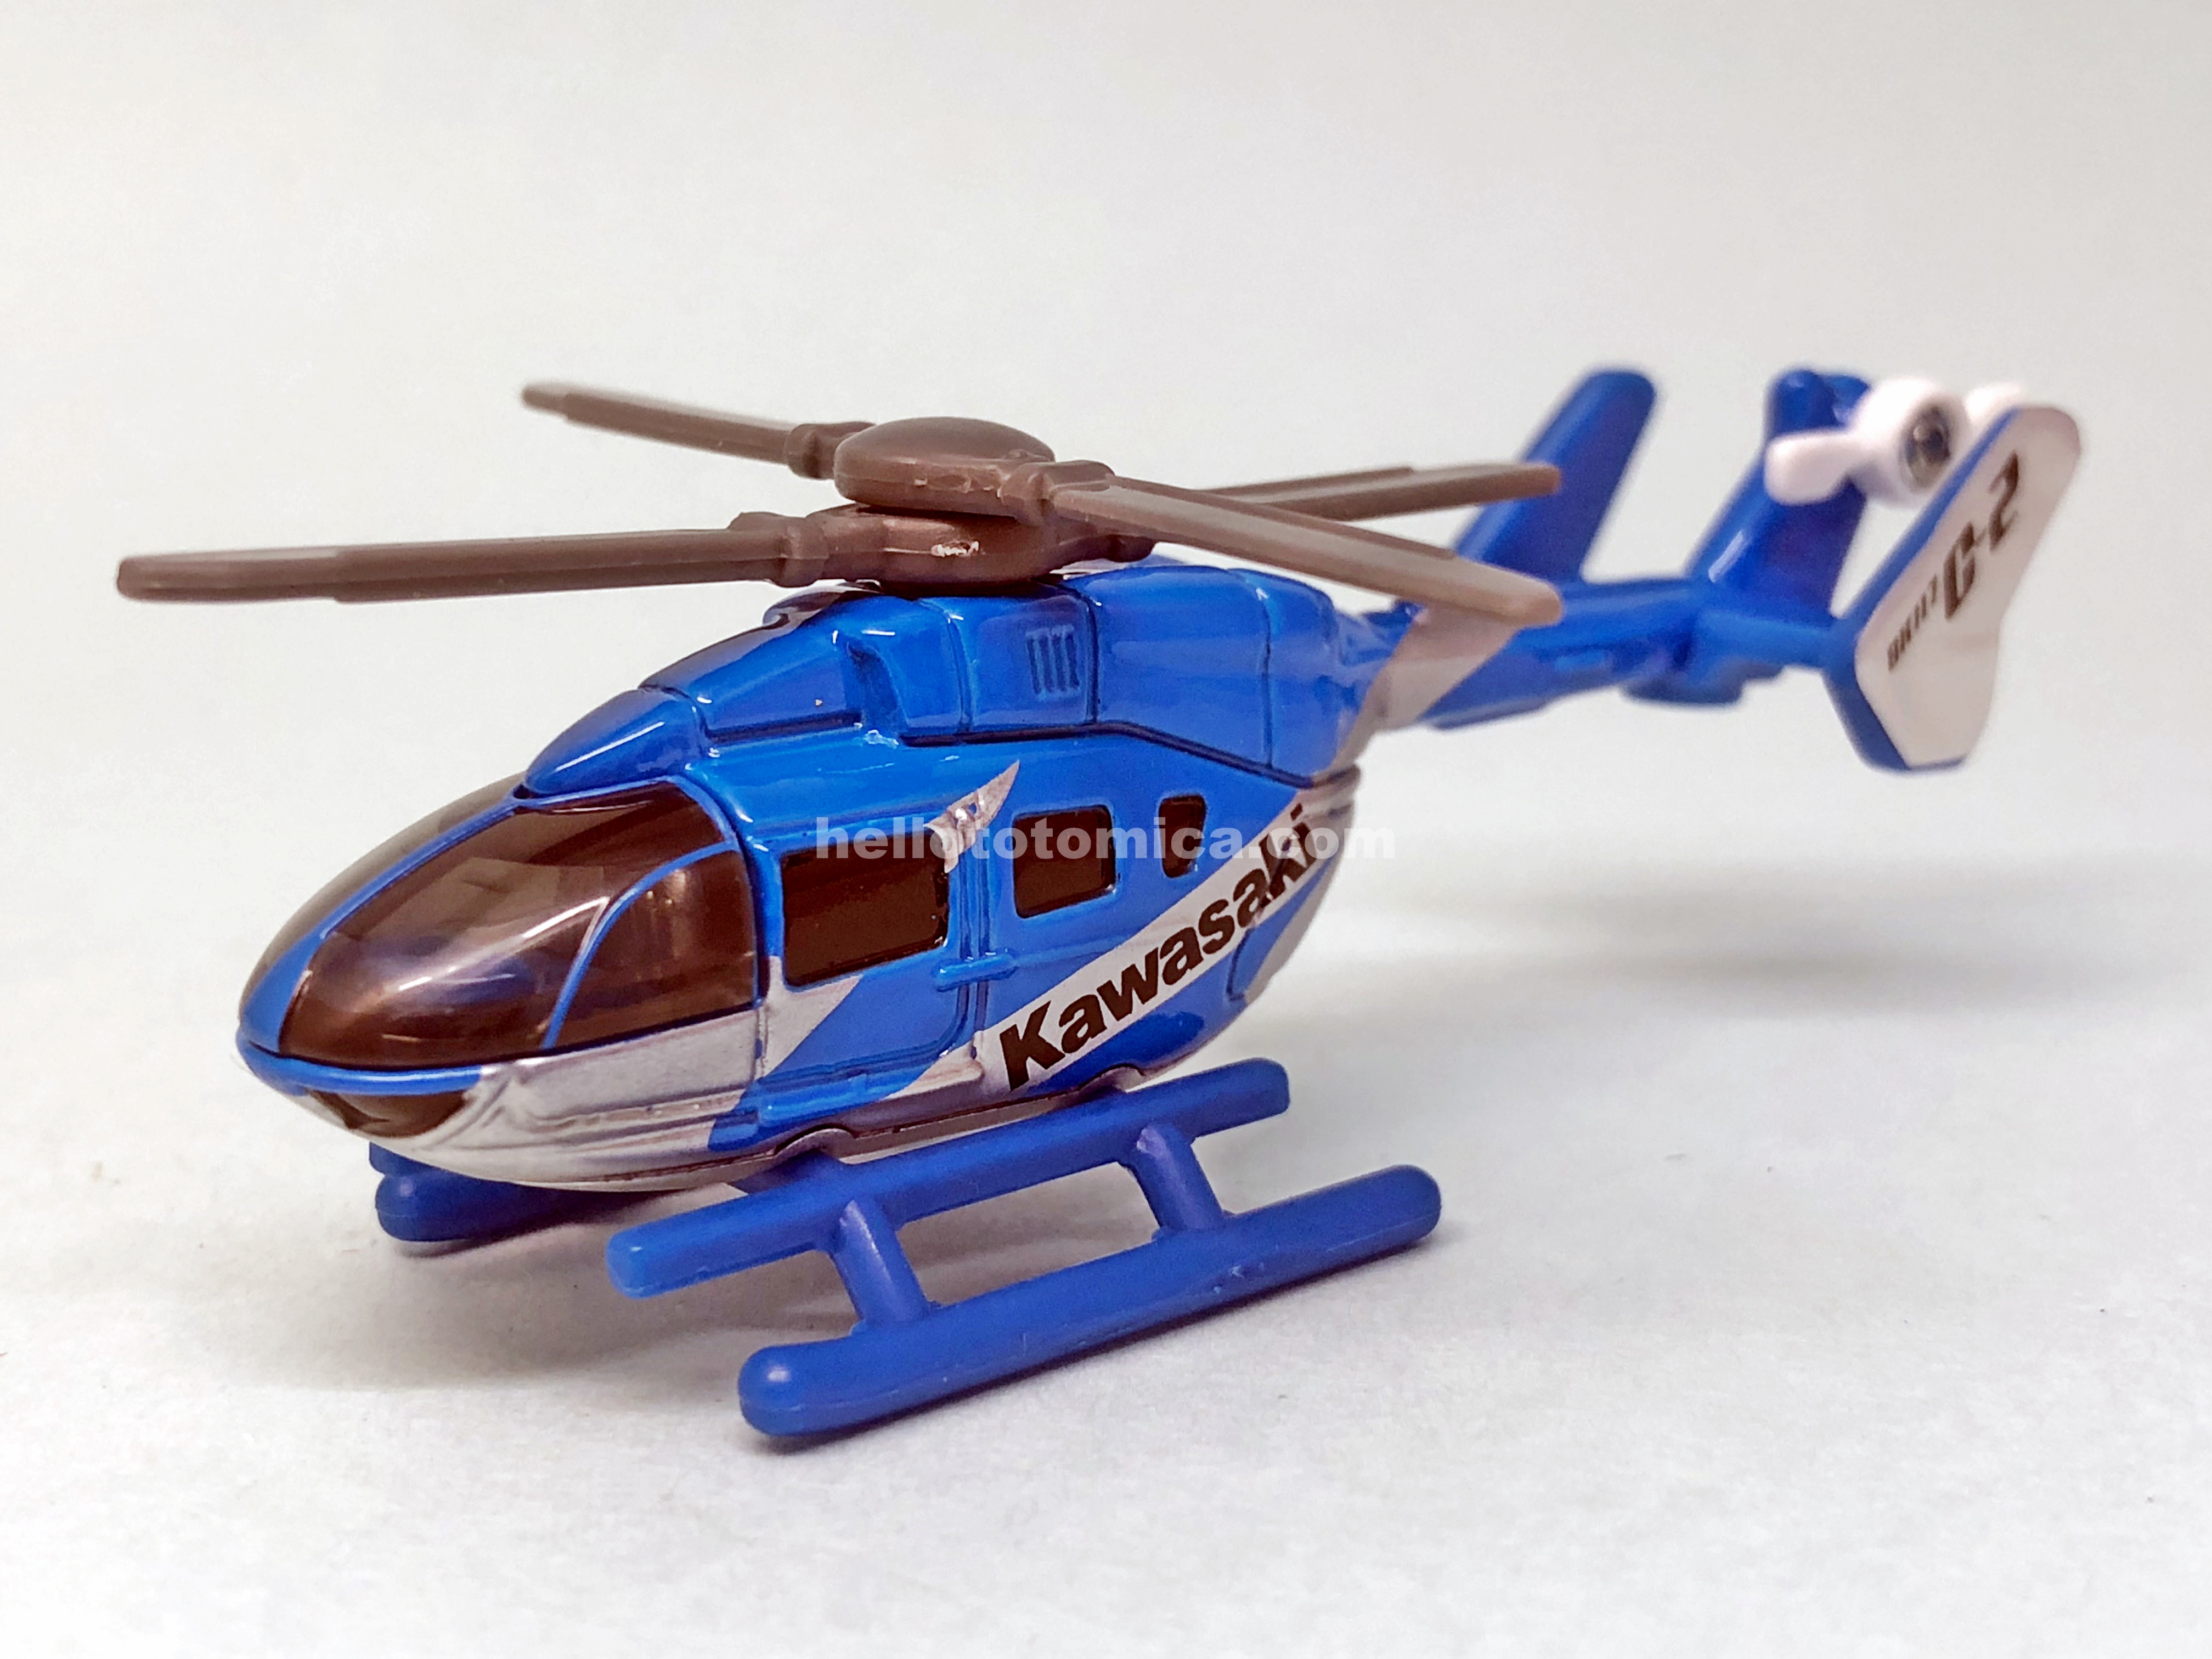 24-8 川崎重工業 BK117 C-2 ヘリコプター | はるてんのトミカ